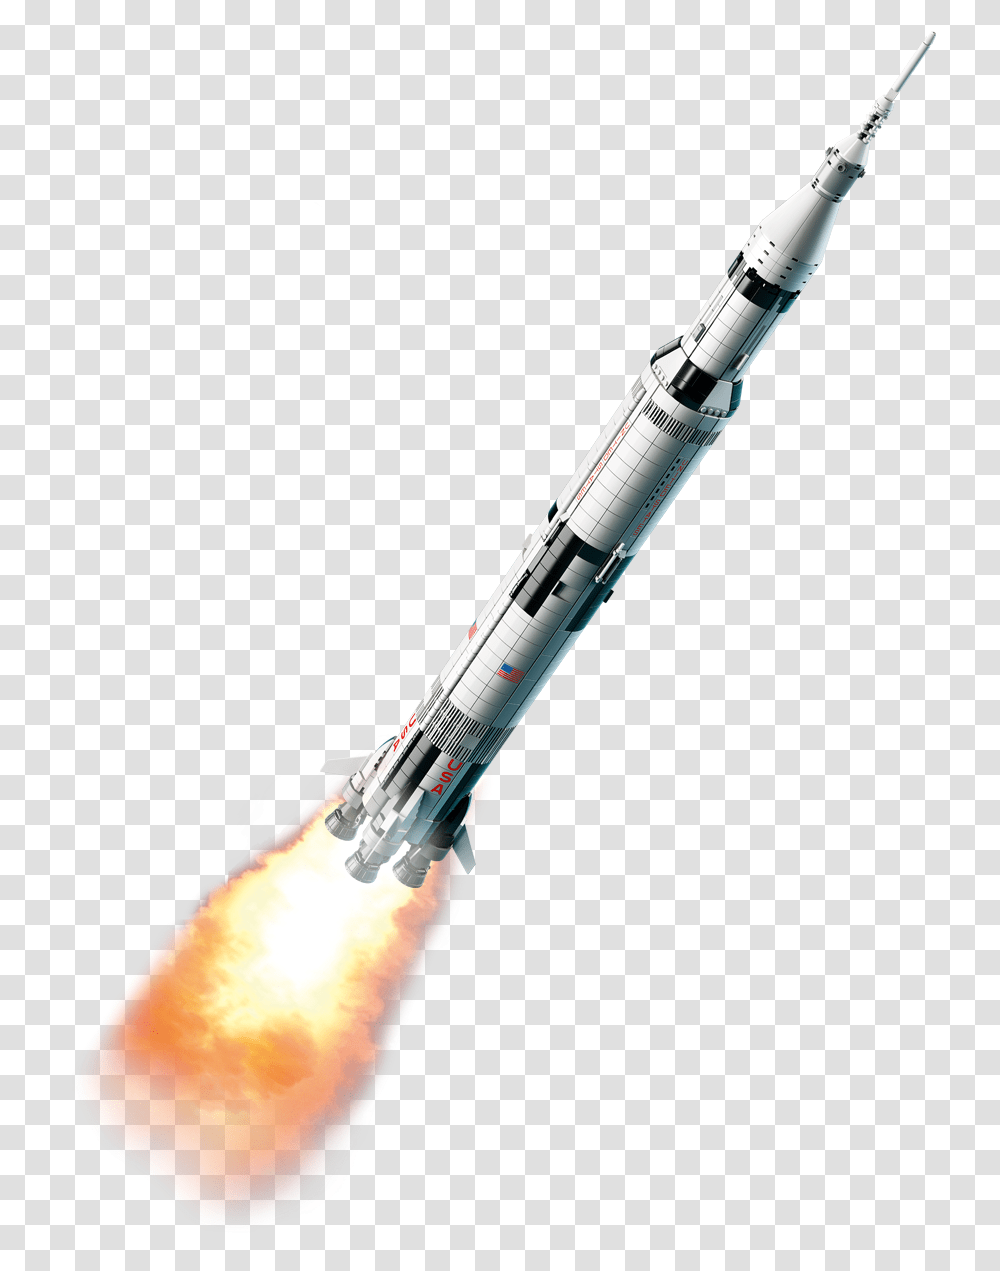 Missile Lego Saturn V, Rocket, Vehicle, Transportation, Launch Transparent Png